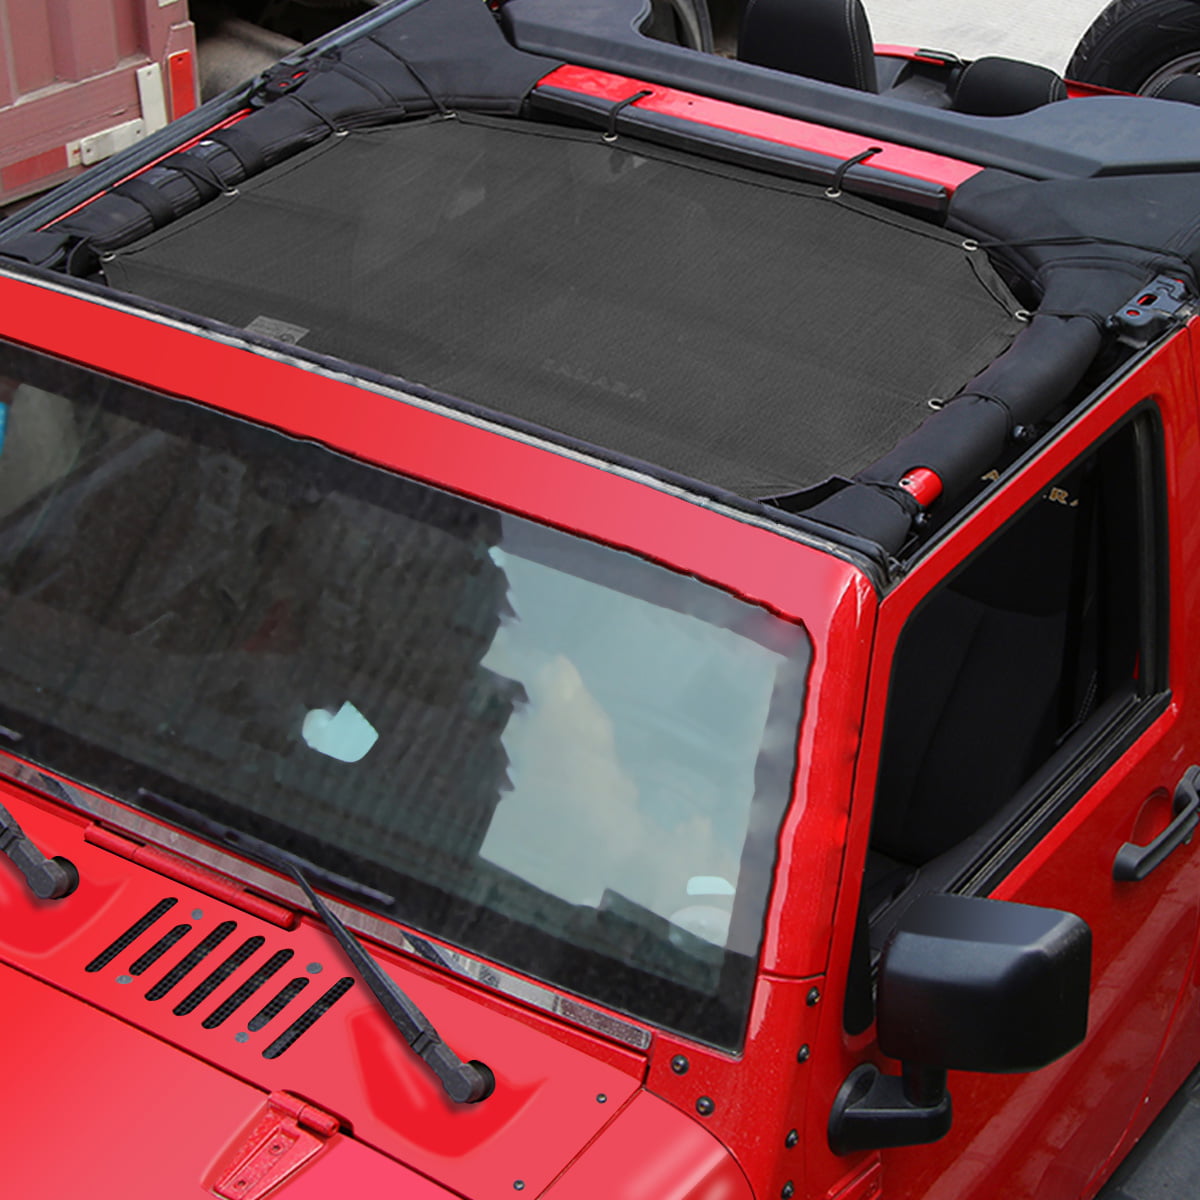 Roof Sunshade Mesh Cover UV Protection for Jeep Wrangler JK 2007-17 Black Skull